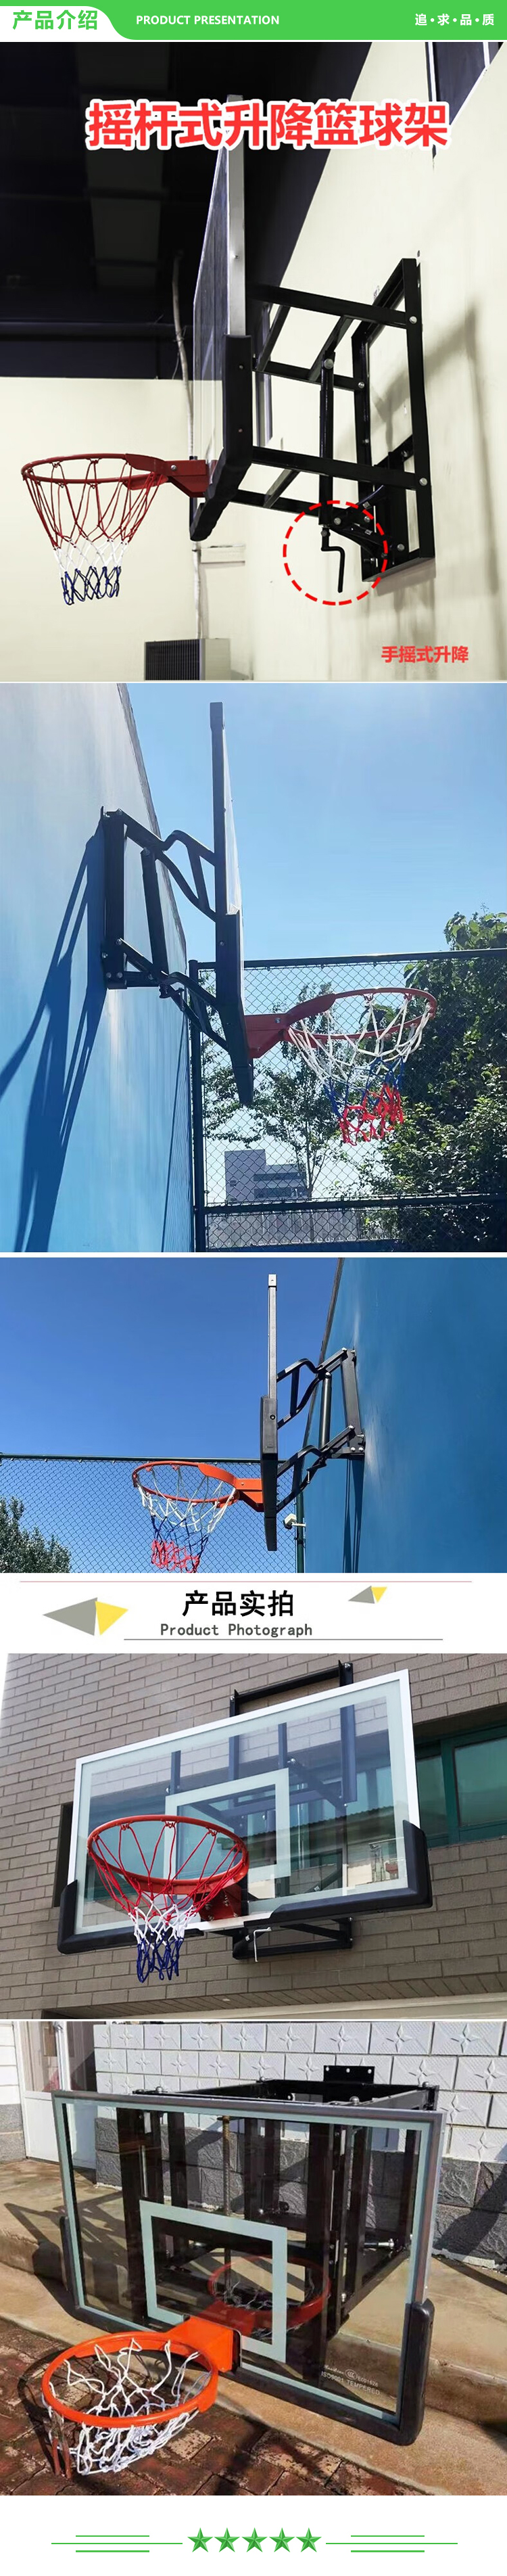 益动未来 1.2米x0.8米篮板 墙壁可升降调节篮球架 青少年学校训练室内挂壁篮球架 2.jpg